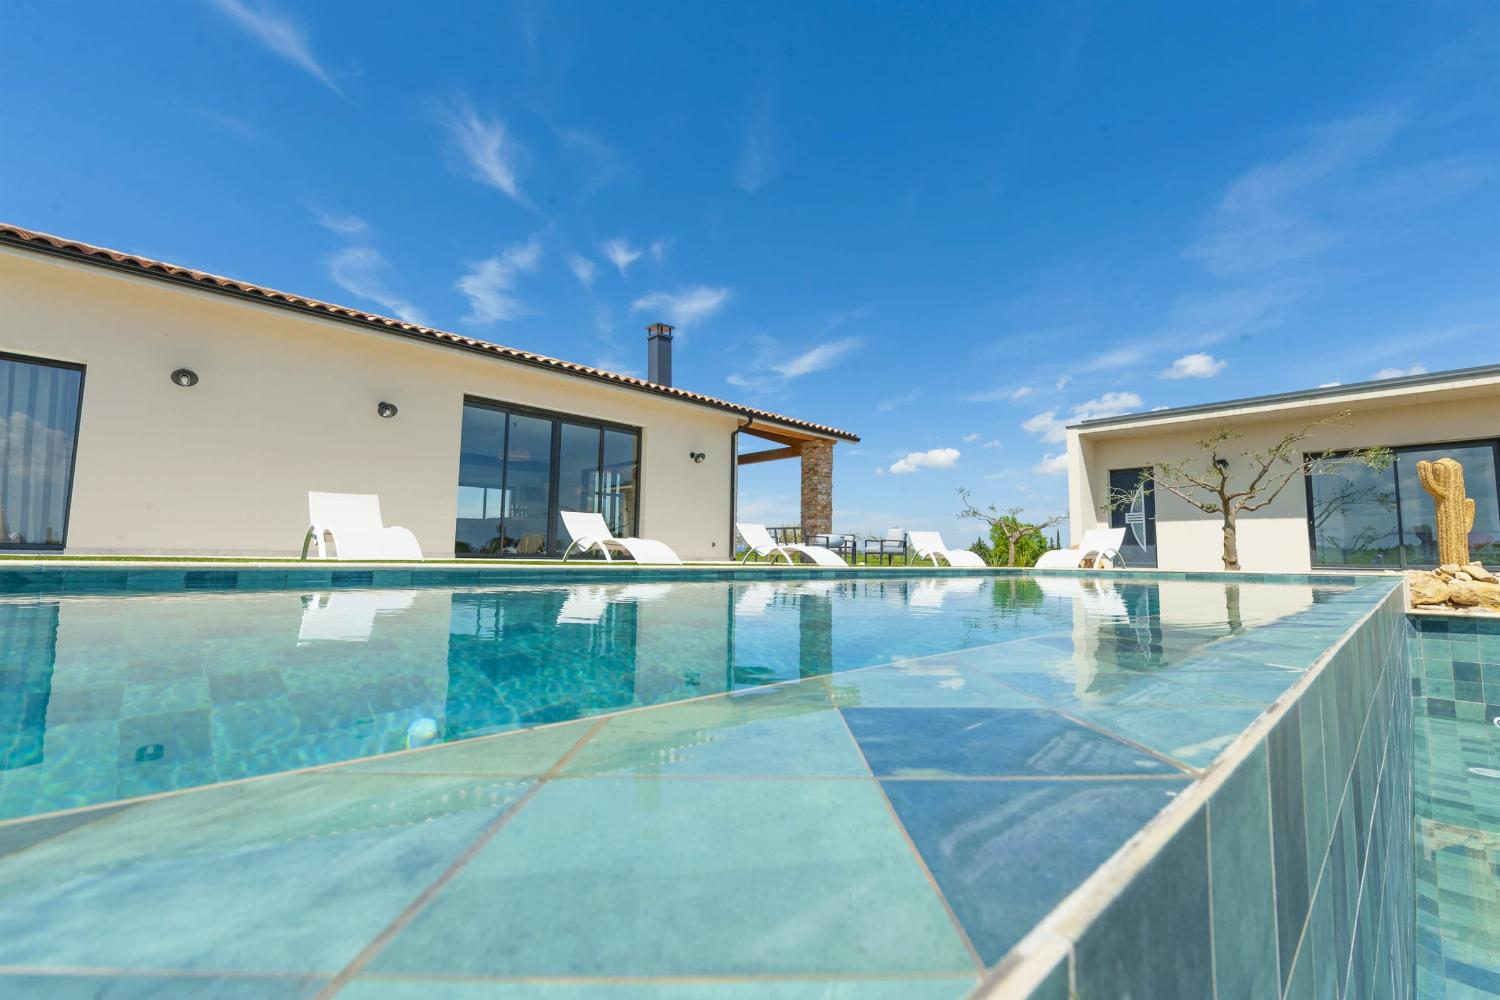 Villa de vacances en Occitanie avec piscine privée chauffée